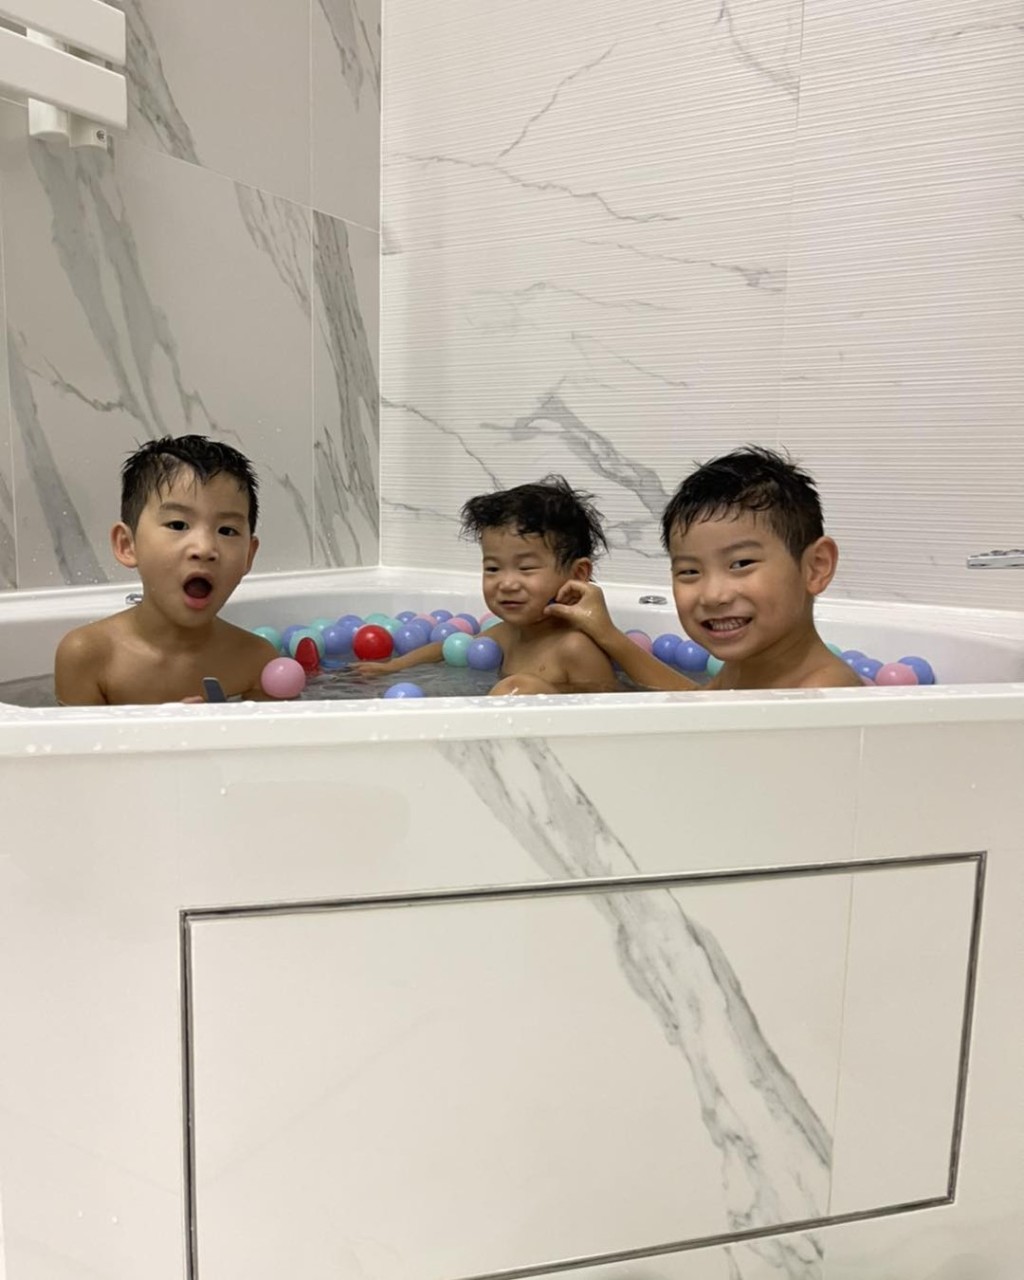 浴缸還可以讓三個孩子一同浸浴。